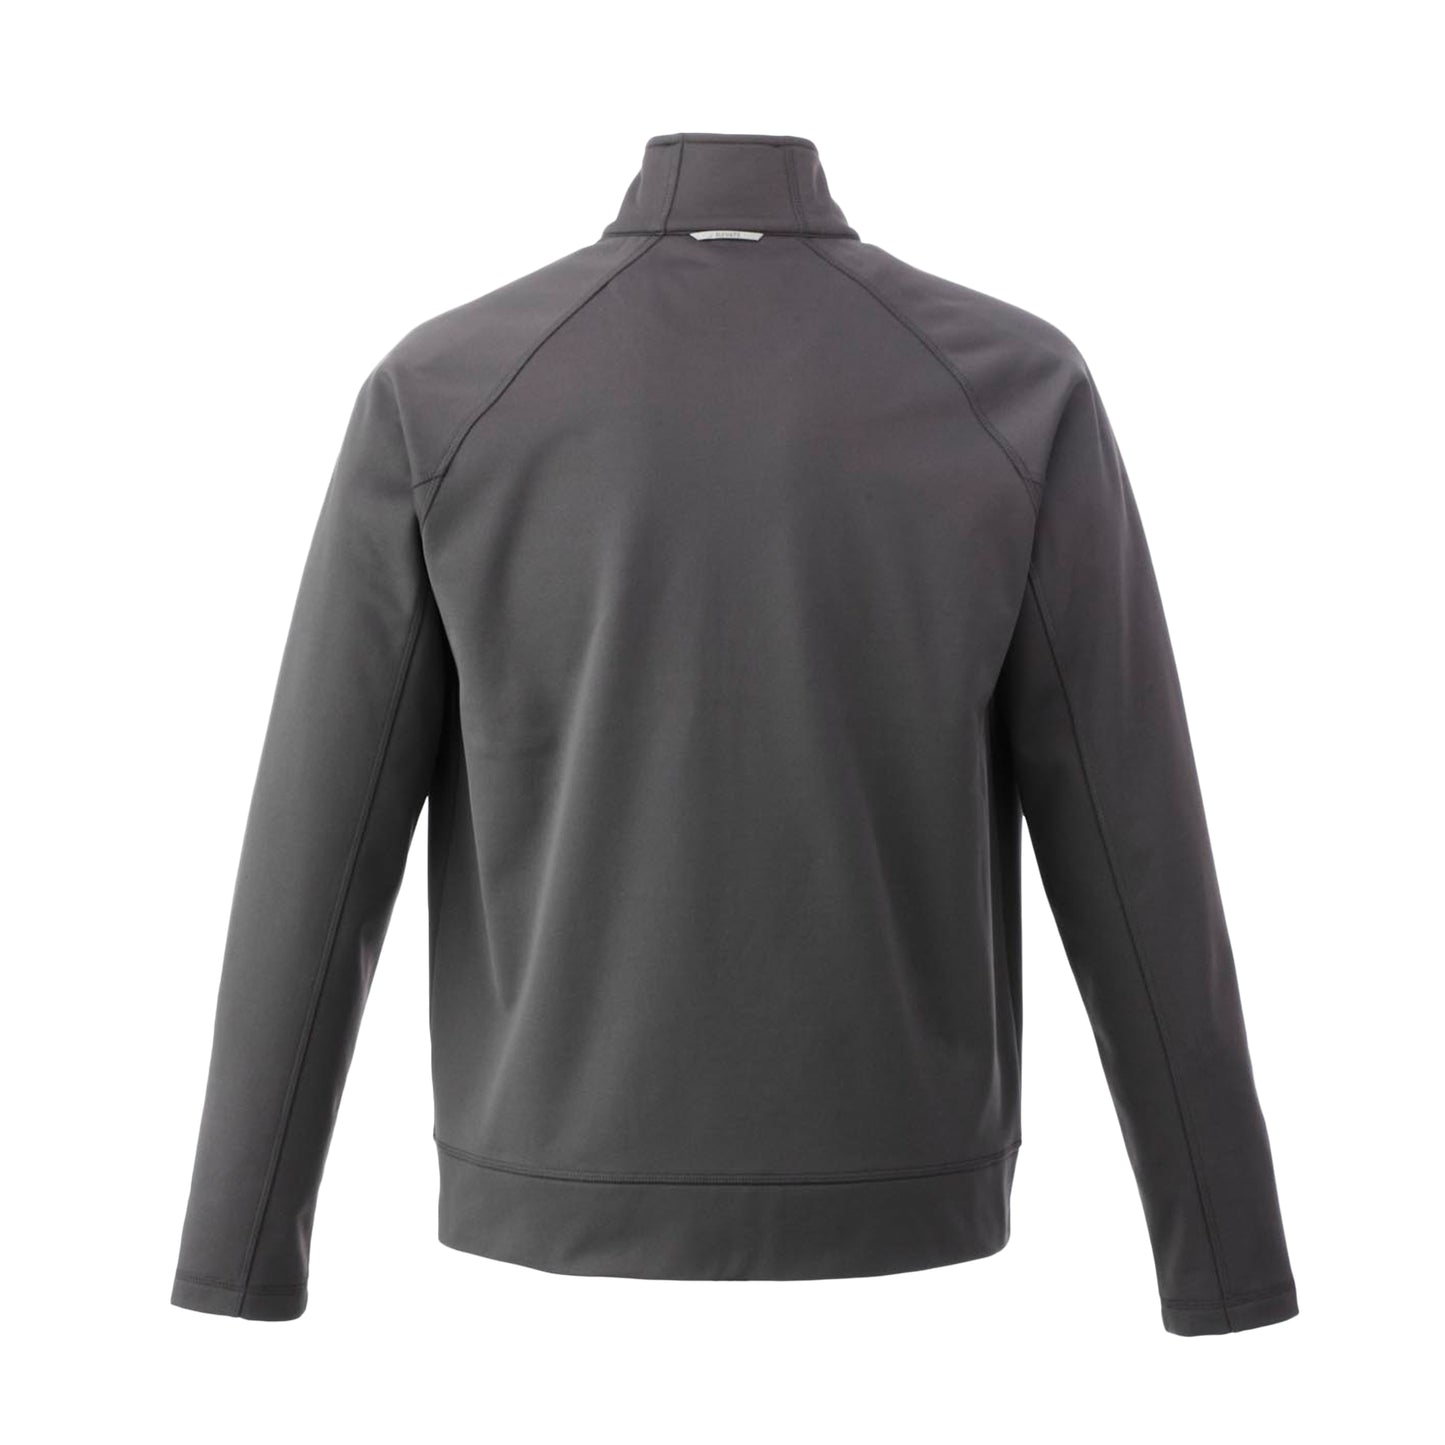 Veste de travail 100 % tricot de jersey pour homme Uniformes Sélect #18117 gris dos